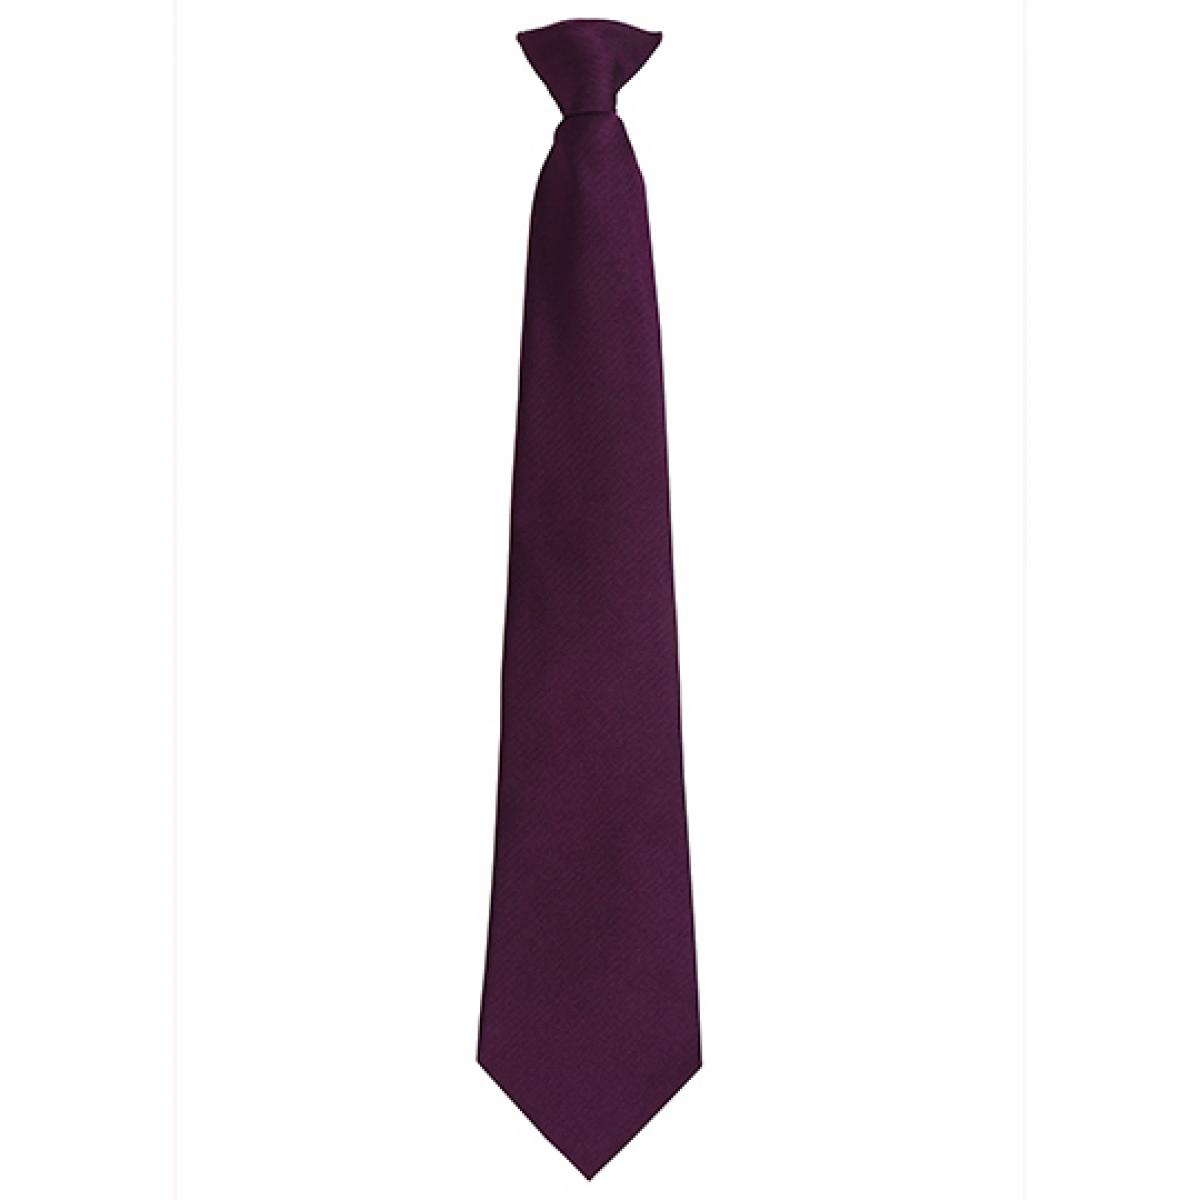 Hersteller: Premier Workwear Herstellernummer: PR785 Artikelbezeichnung: ´Colours´ Fashion Clip Tie Farbe: Purple (ca. Pantone 518C)